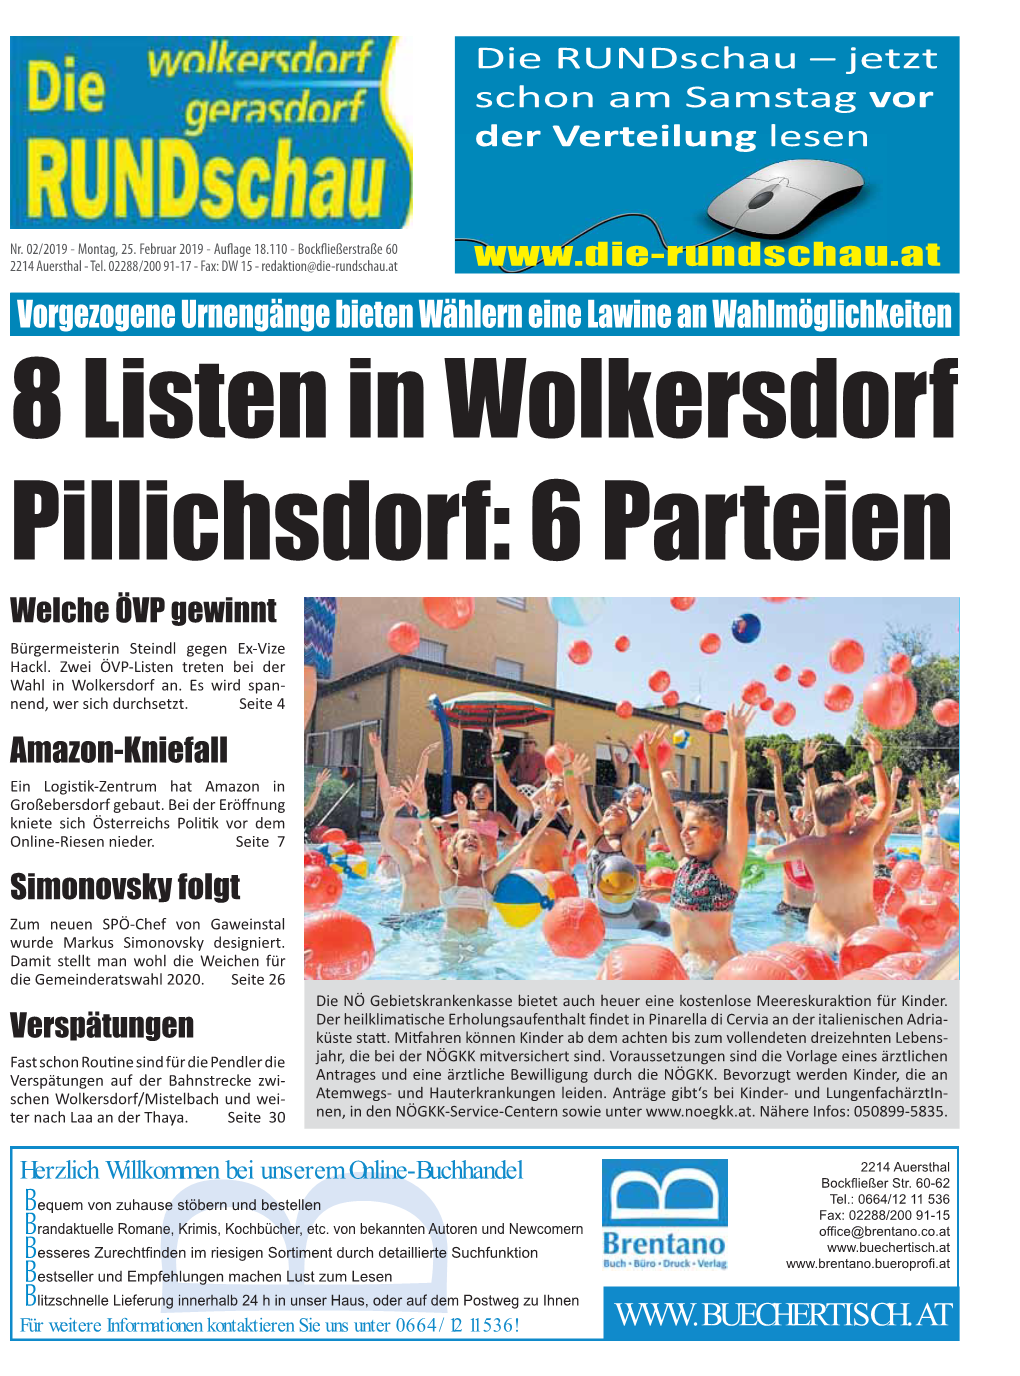 8 Listen in Wolkersdorf Pillichsdorf